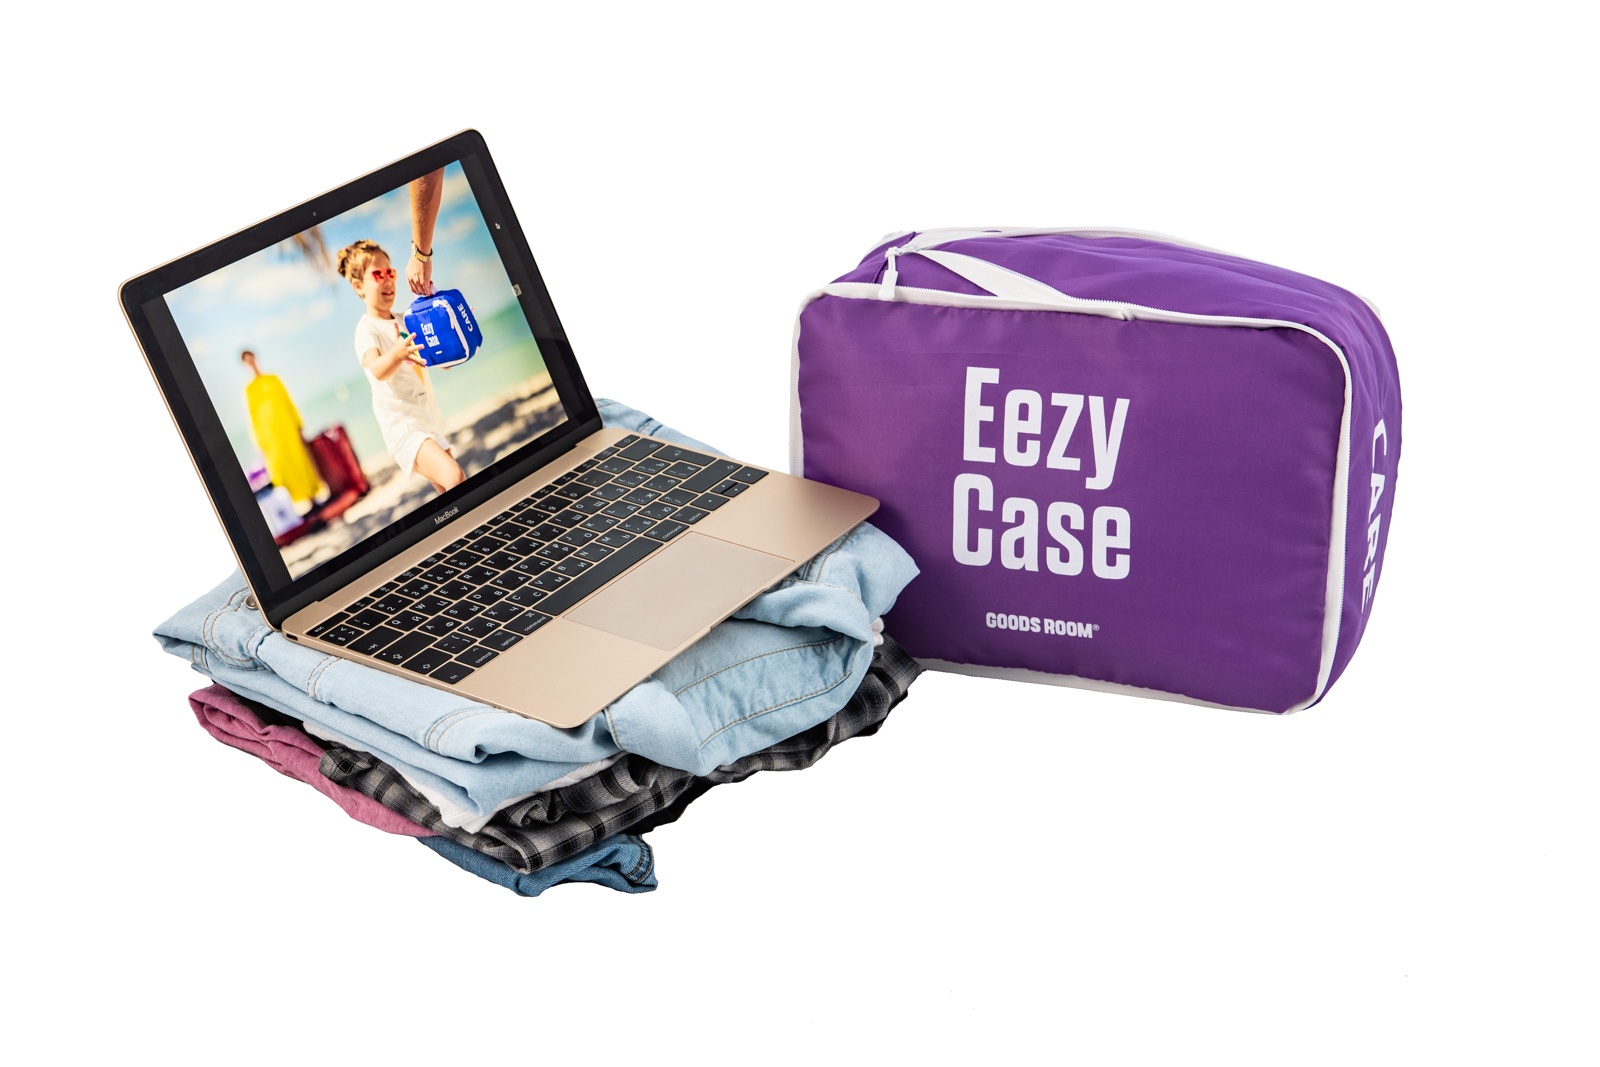 фото Eezy Case - Система хранения вещей в чемодане. Gr